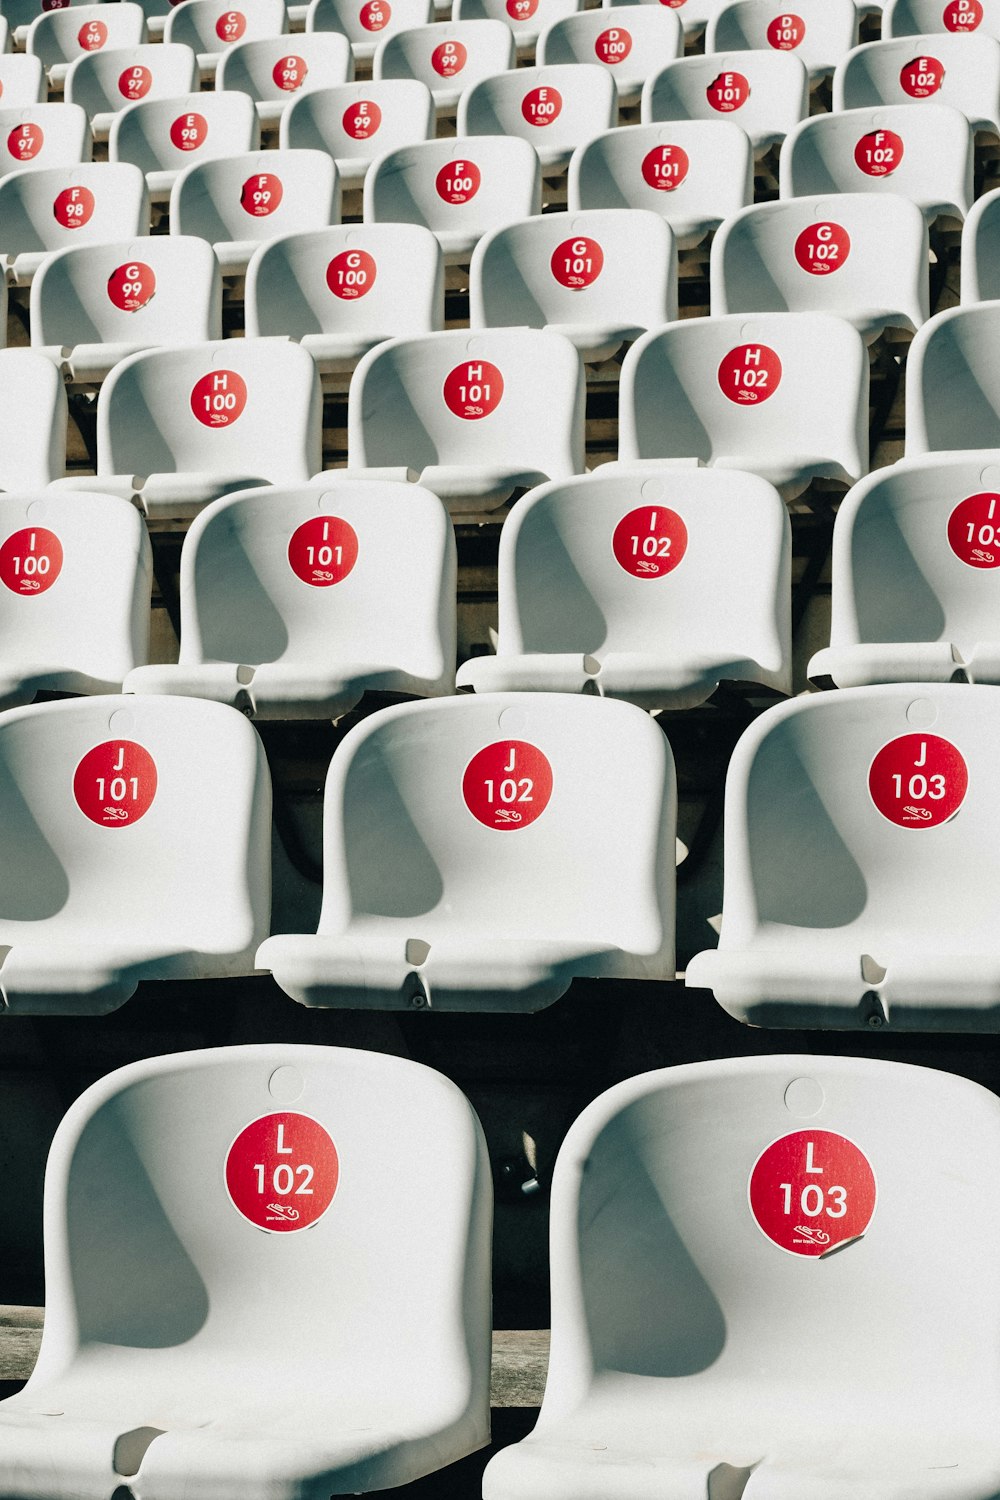 filas de sillas blancas con números rojos